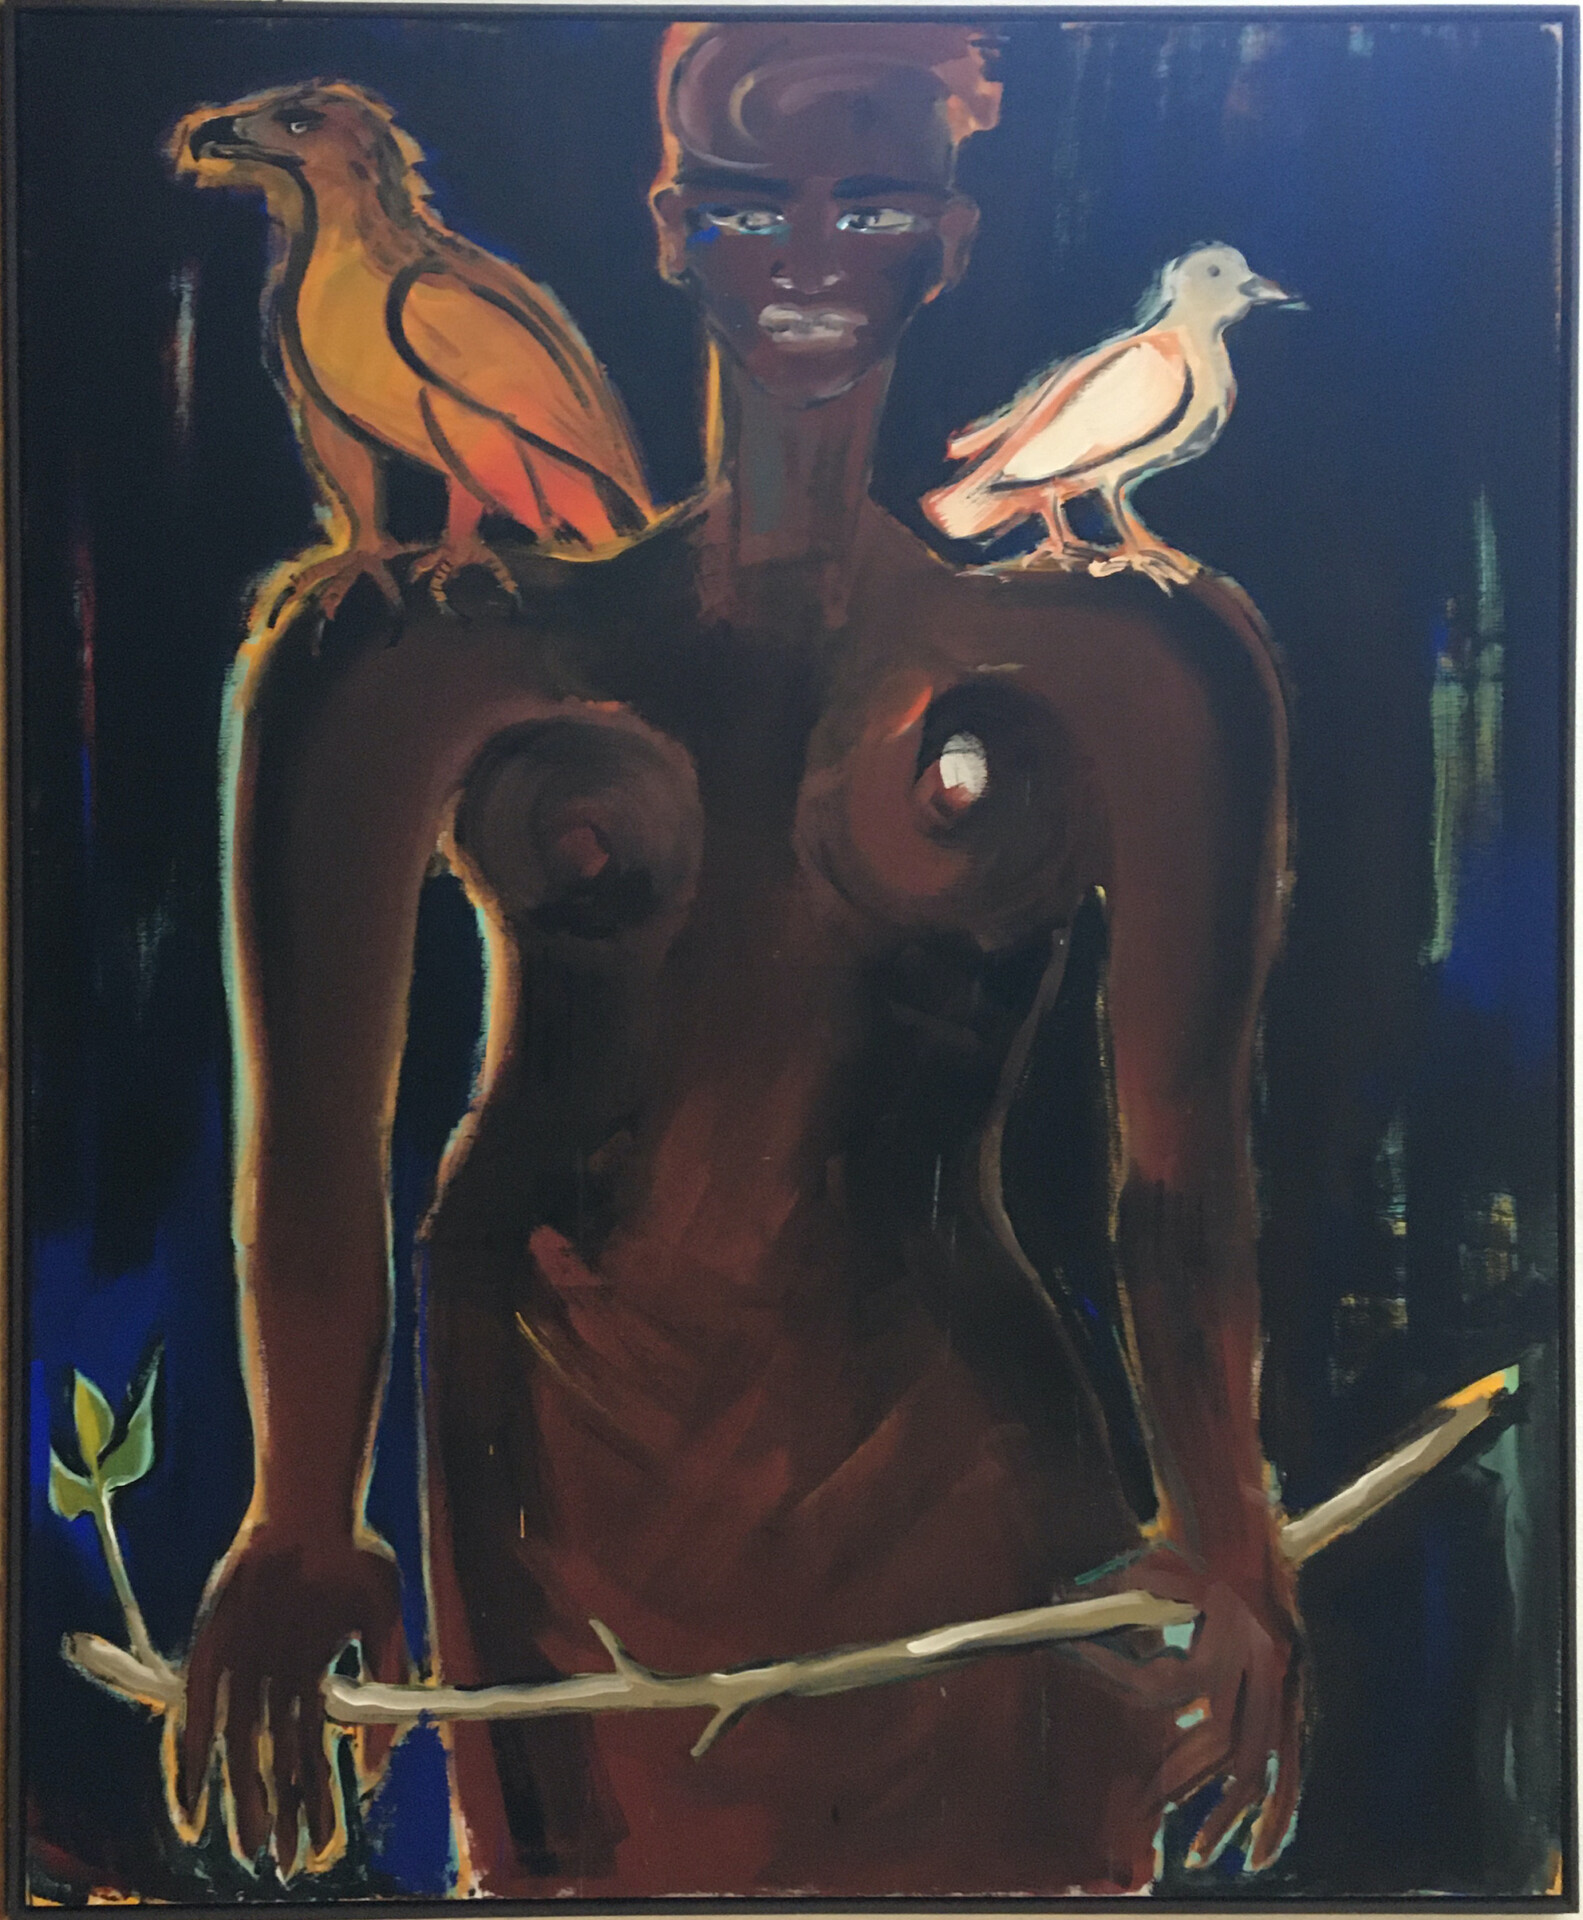 ELVIRA BACH - La Noir Dé, 1990, Acryl auf Leinwand, 230x190cm